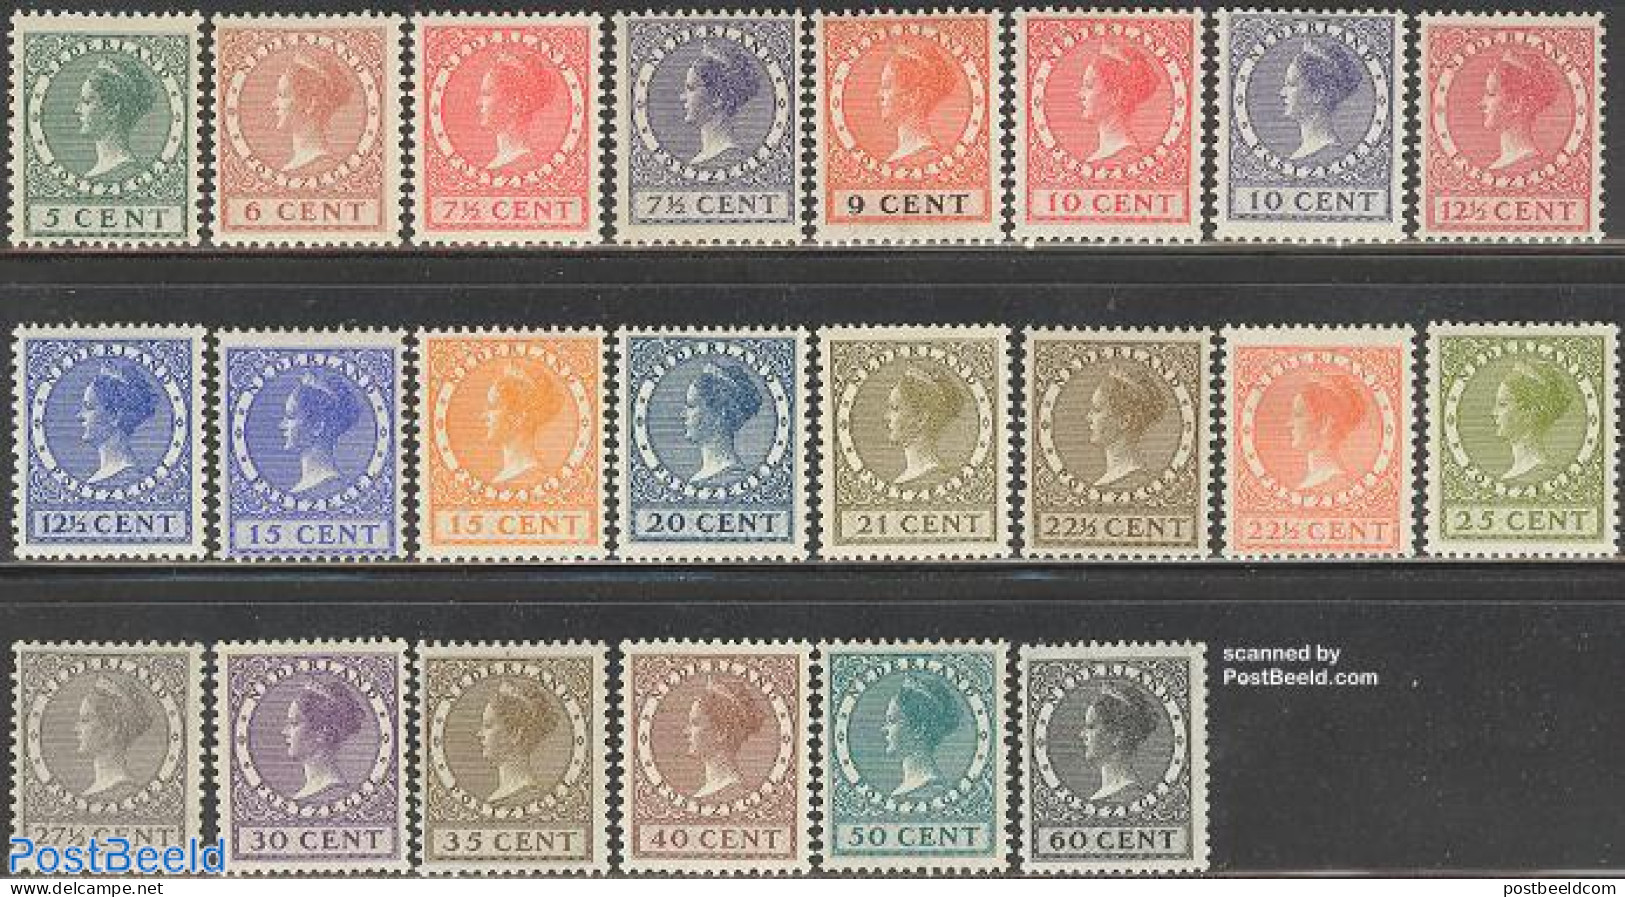 Netherlands 1926 Definitives With WM 22v, Mint NH - Ongebruikt